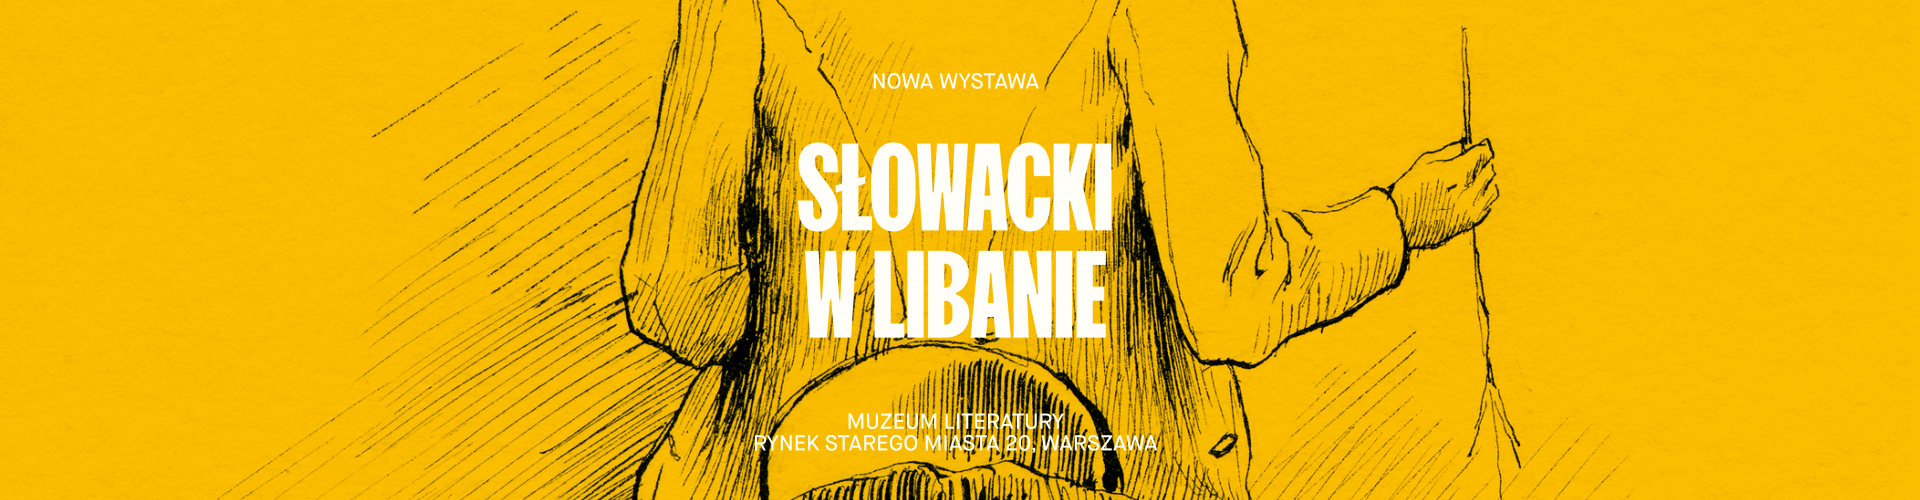 napis Słowacki w Libanie na żółtym tle z motywem graficznym przedstawiającym wędrowca na koniu